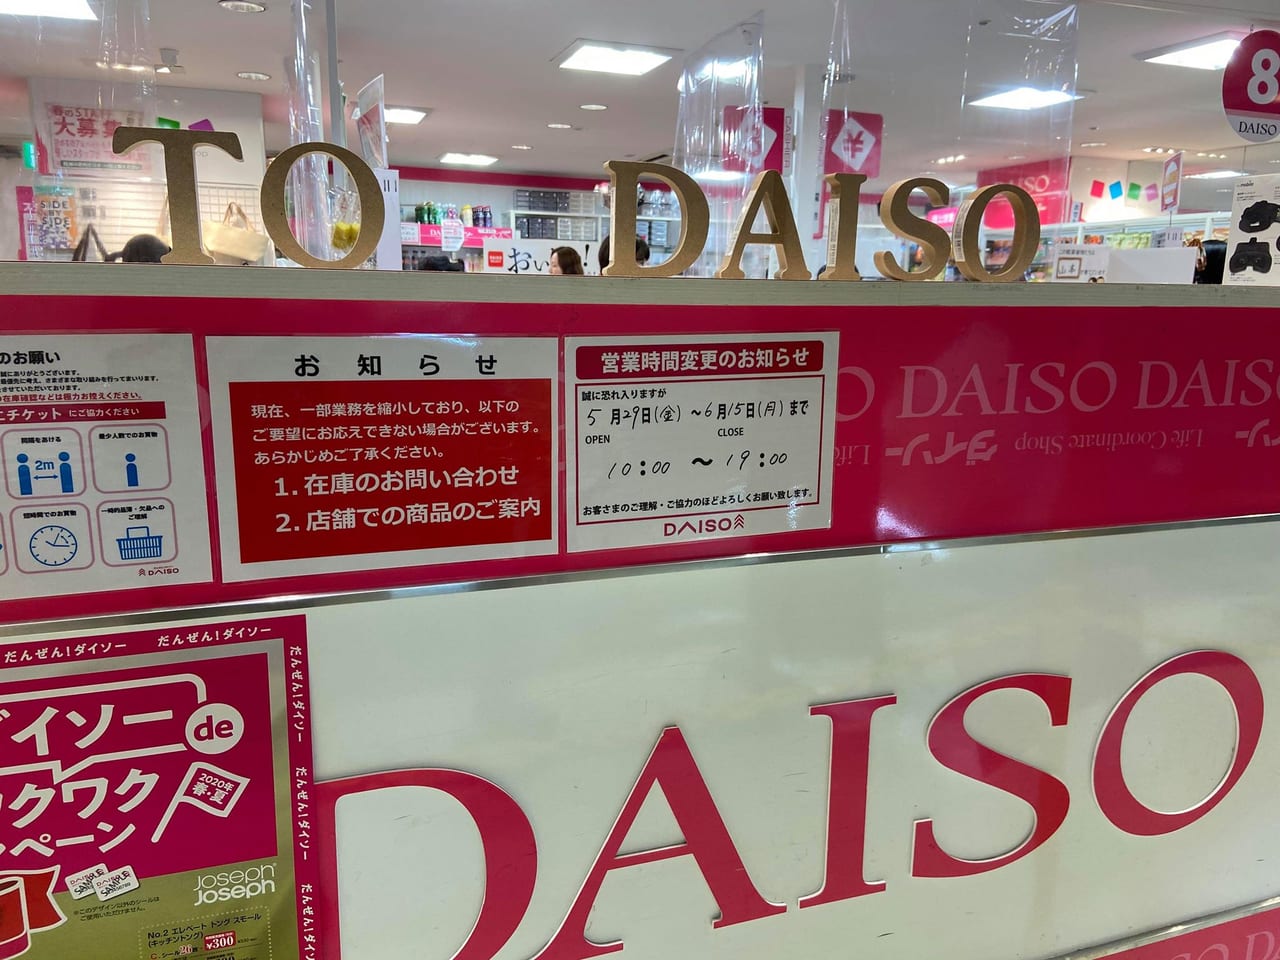 文京区 Daiso ダイソー メトロ エム後楽園店の営業時間が短縮となっています 号外net 文京区